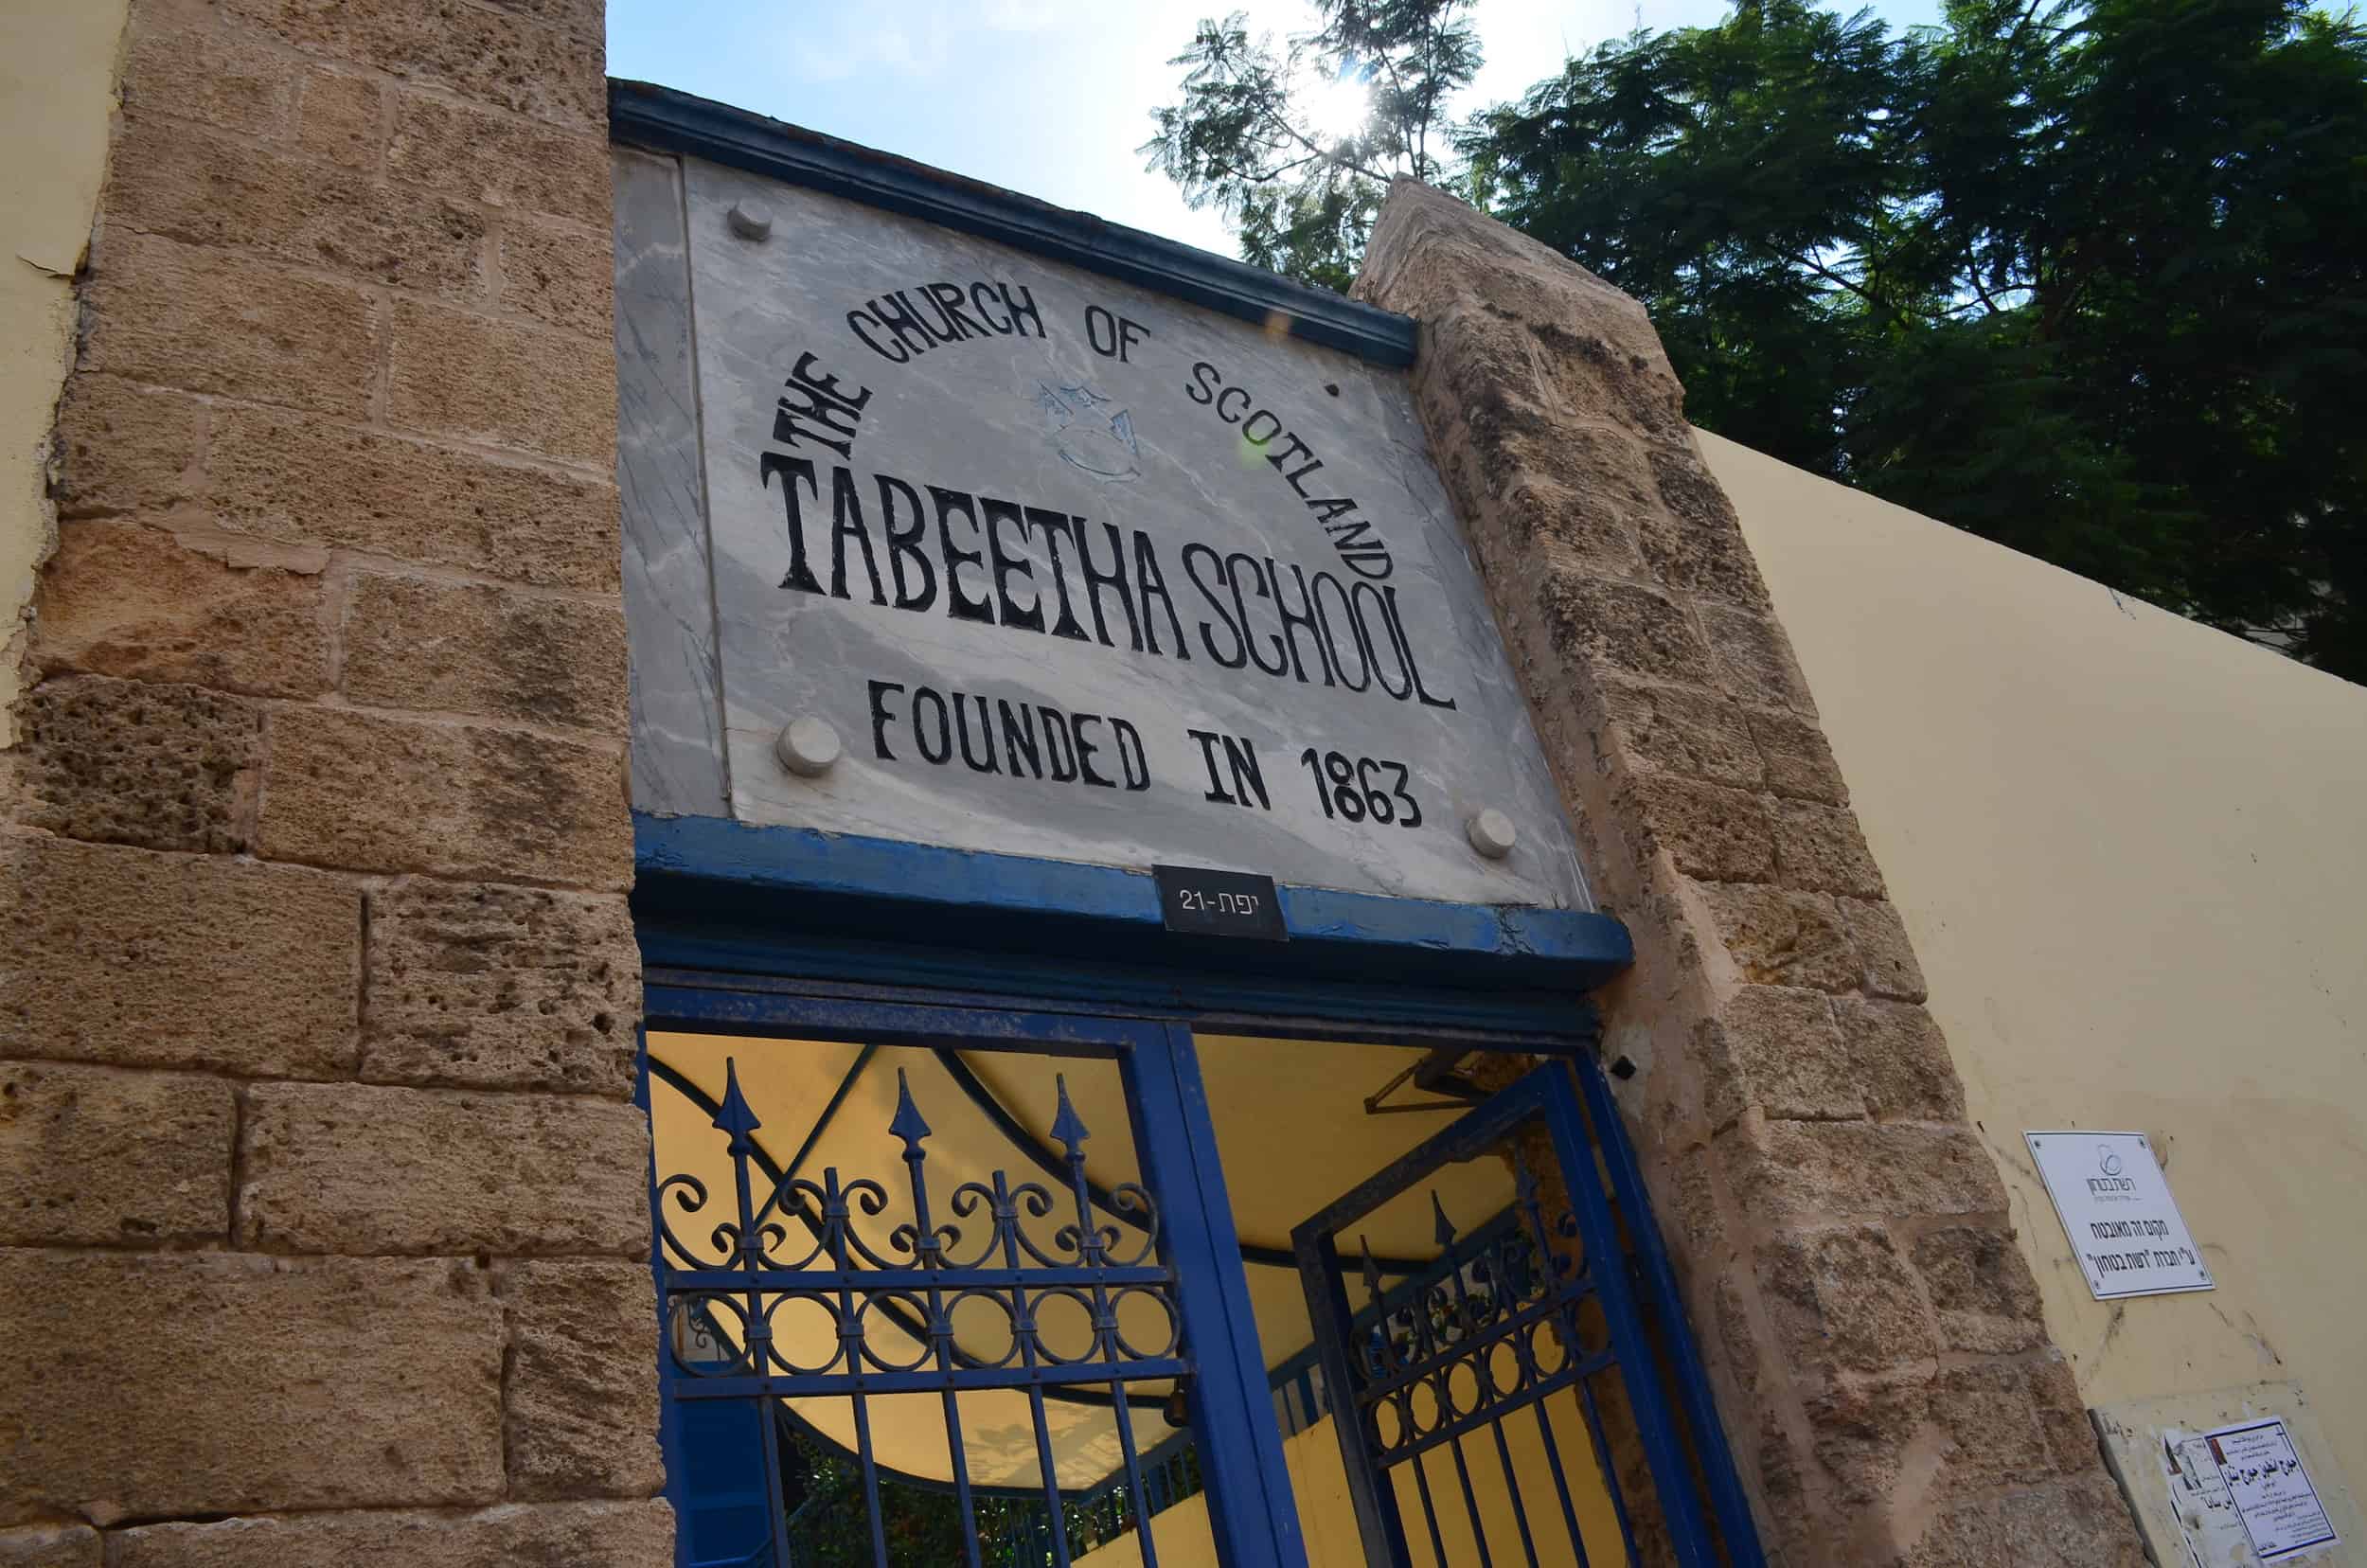 Tabeetha School in Old Jaffa, Tel Aviv, Israel